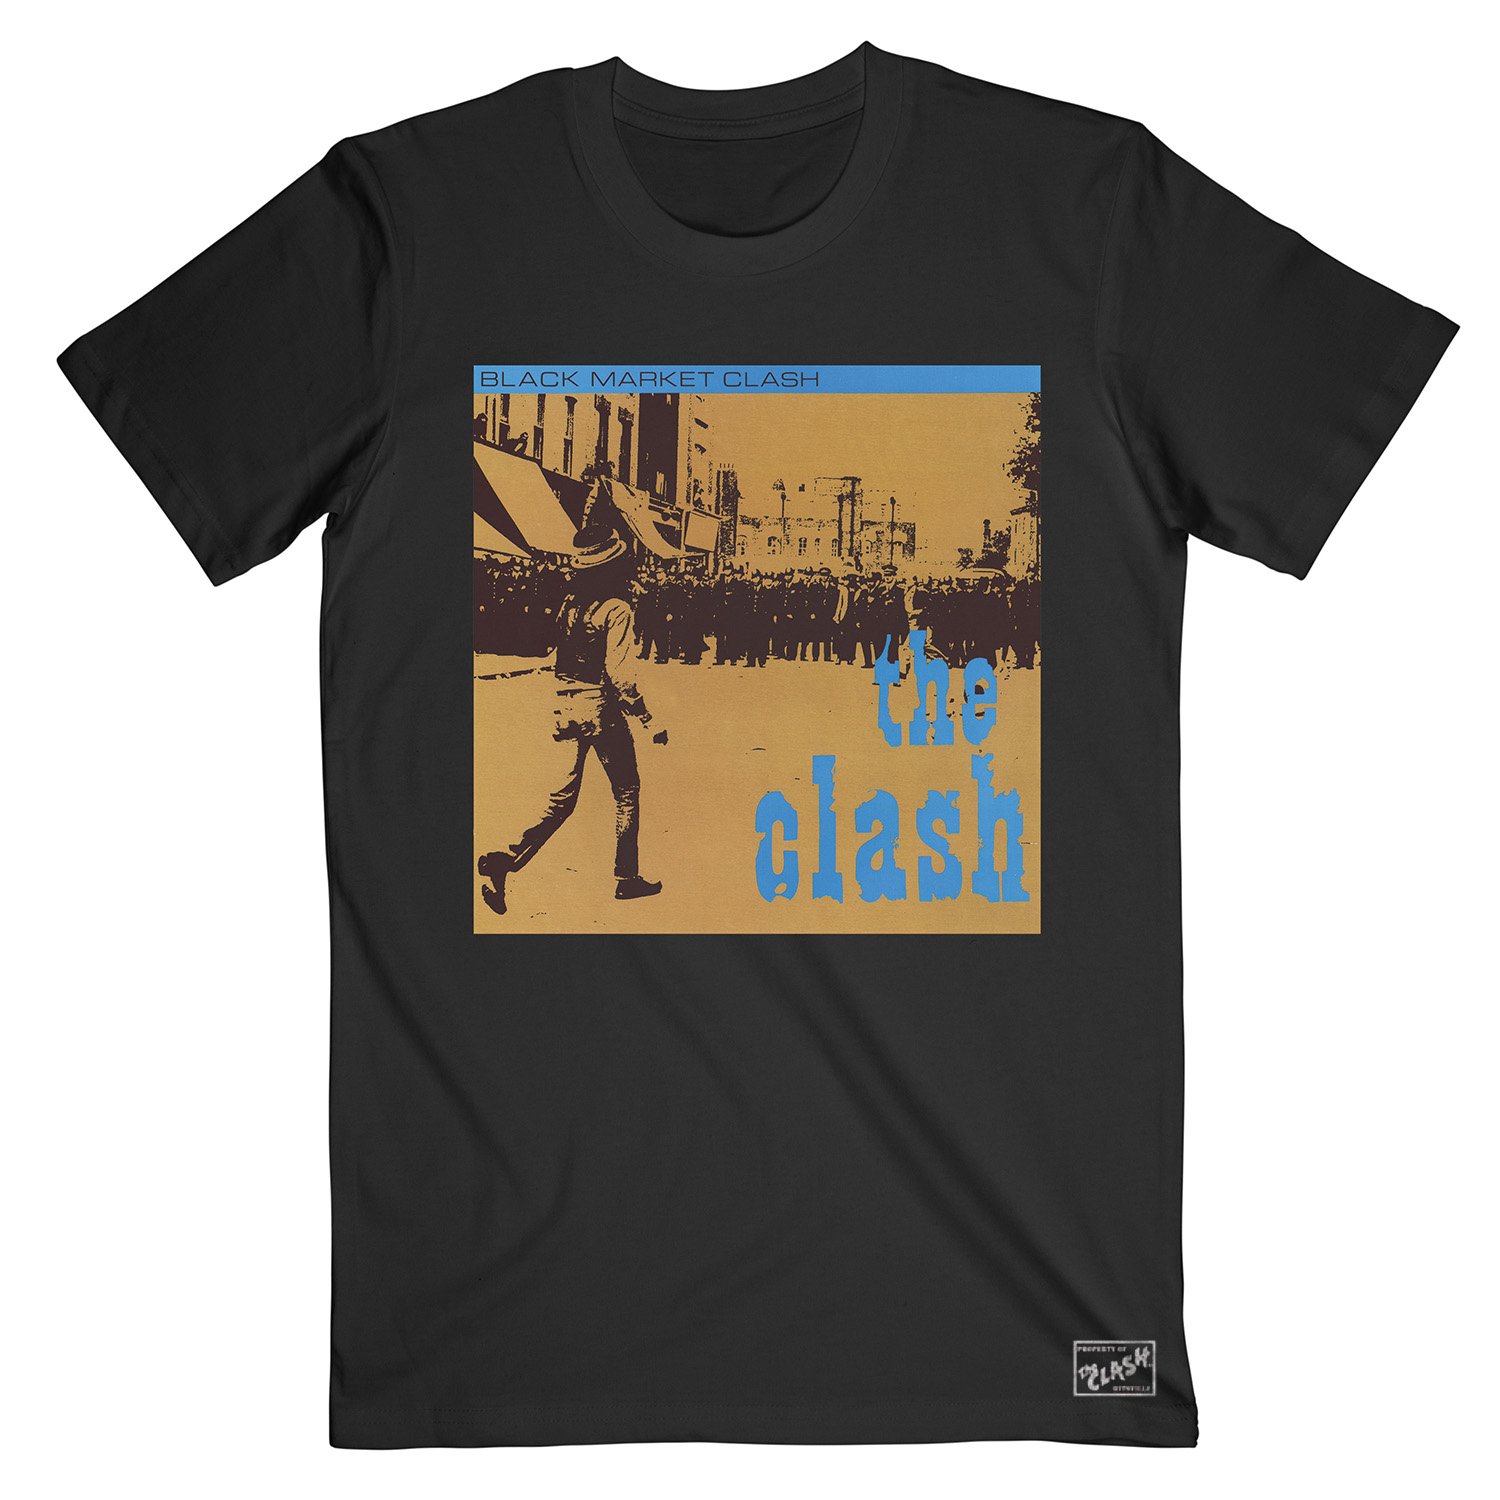 Black Market Clash - Black Market Clash Black T-Shirt